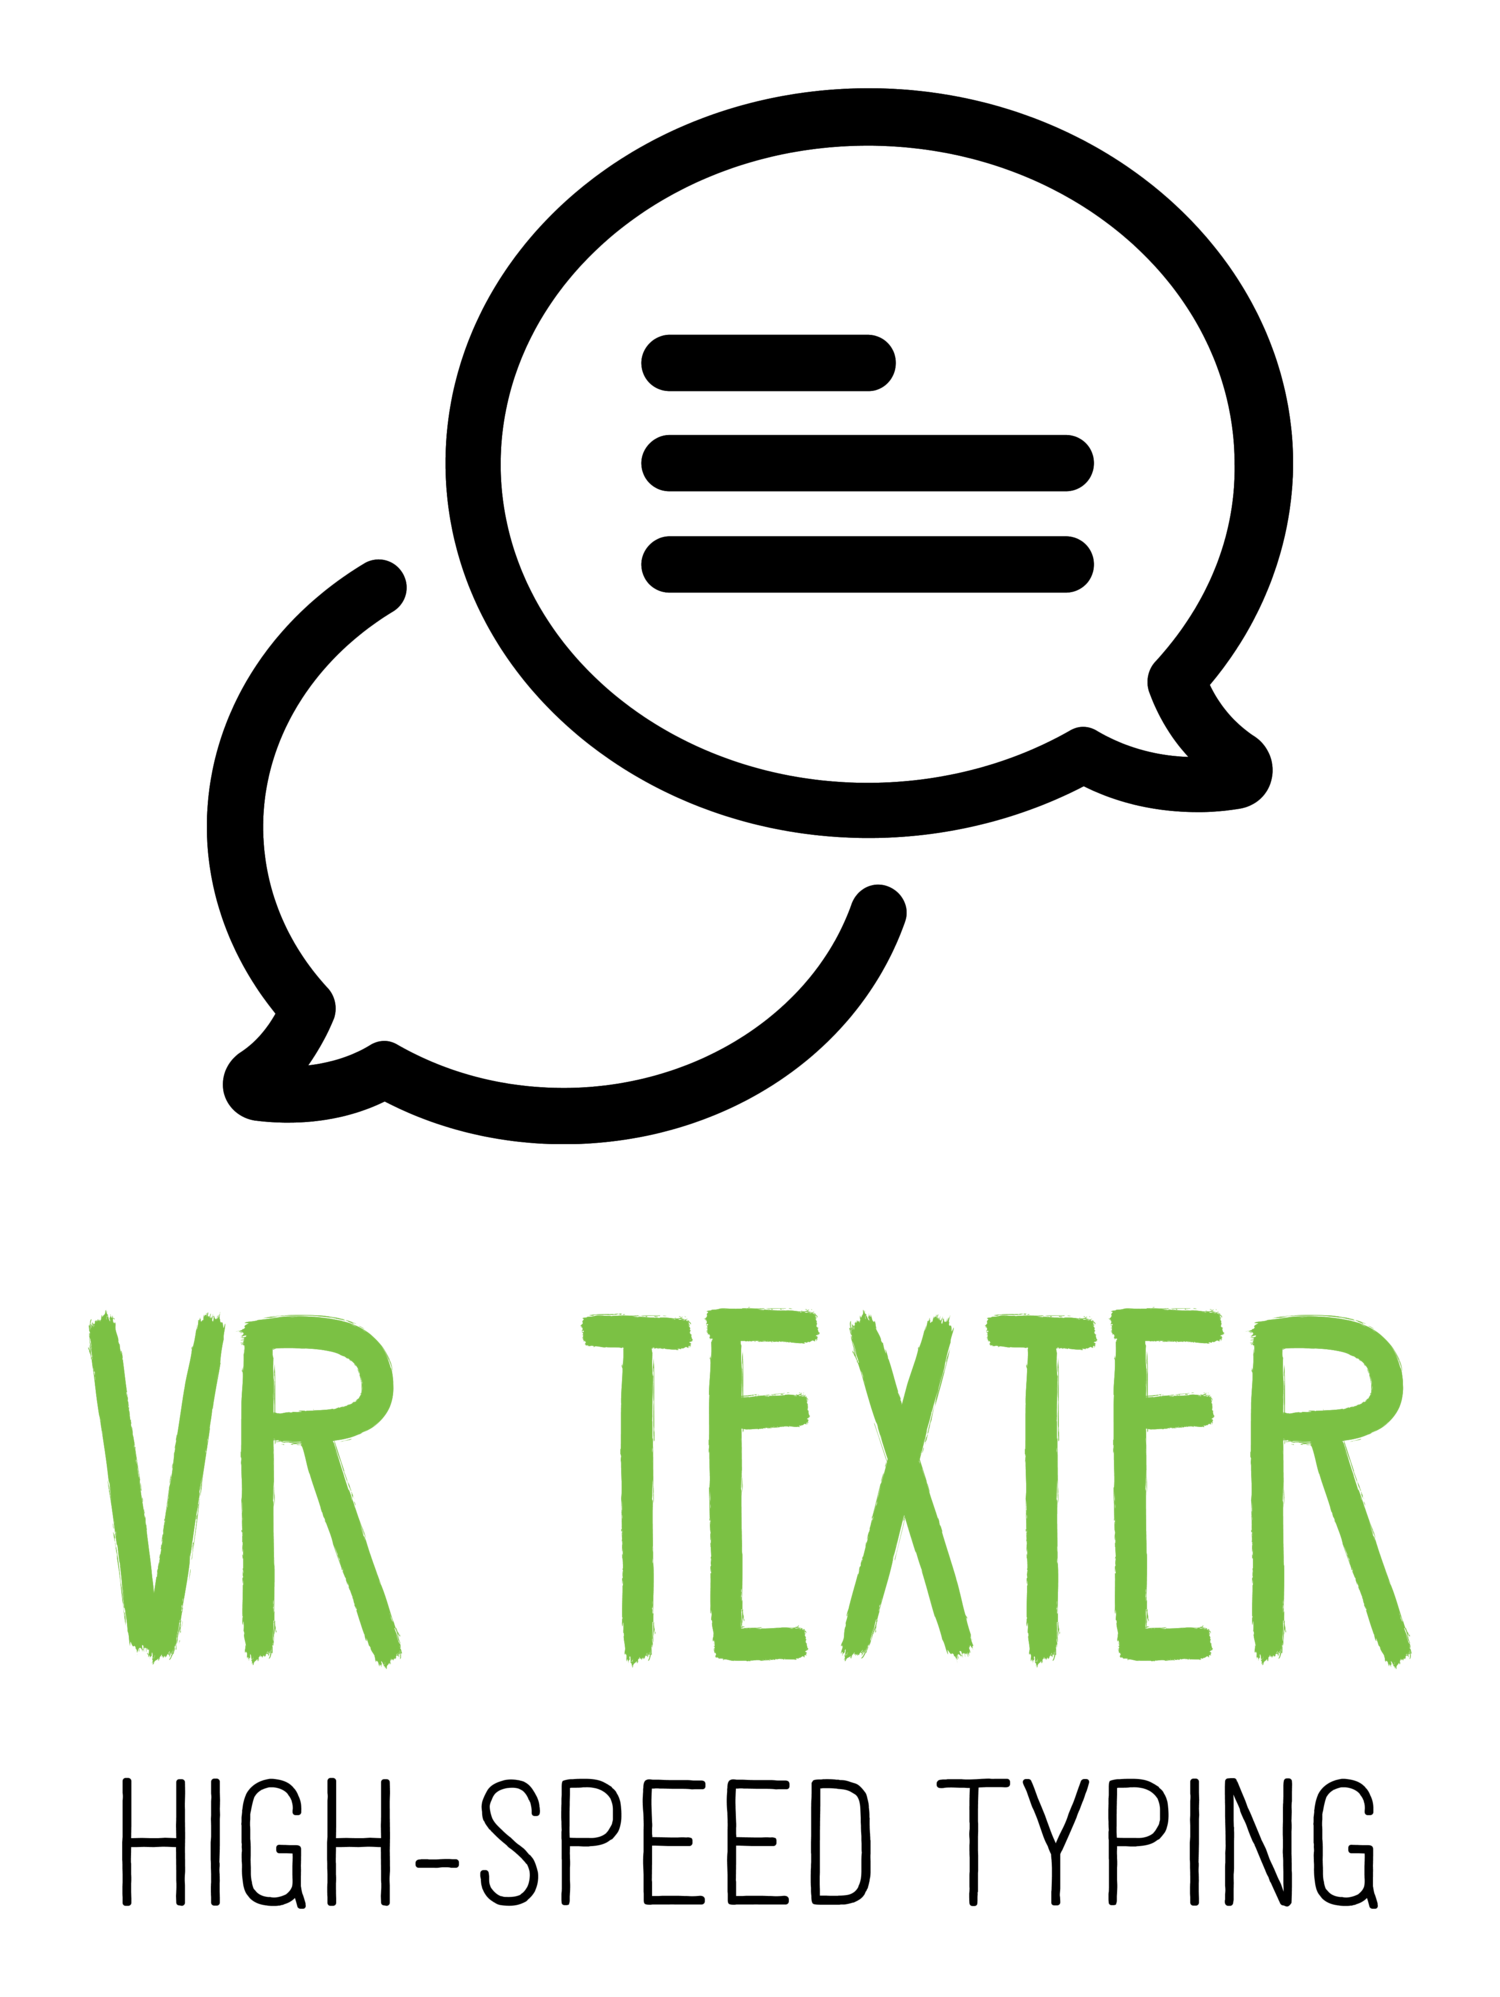 VR Texter